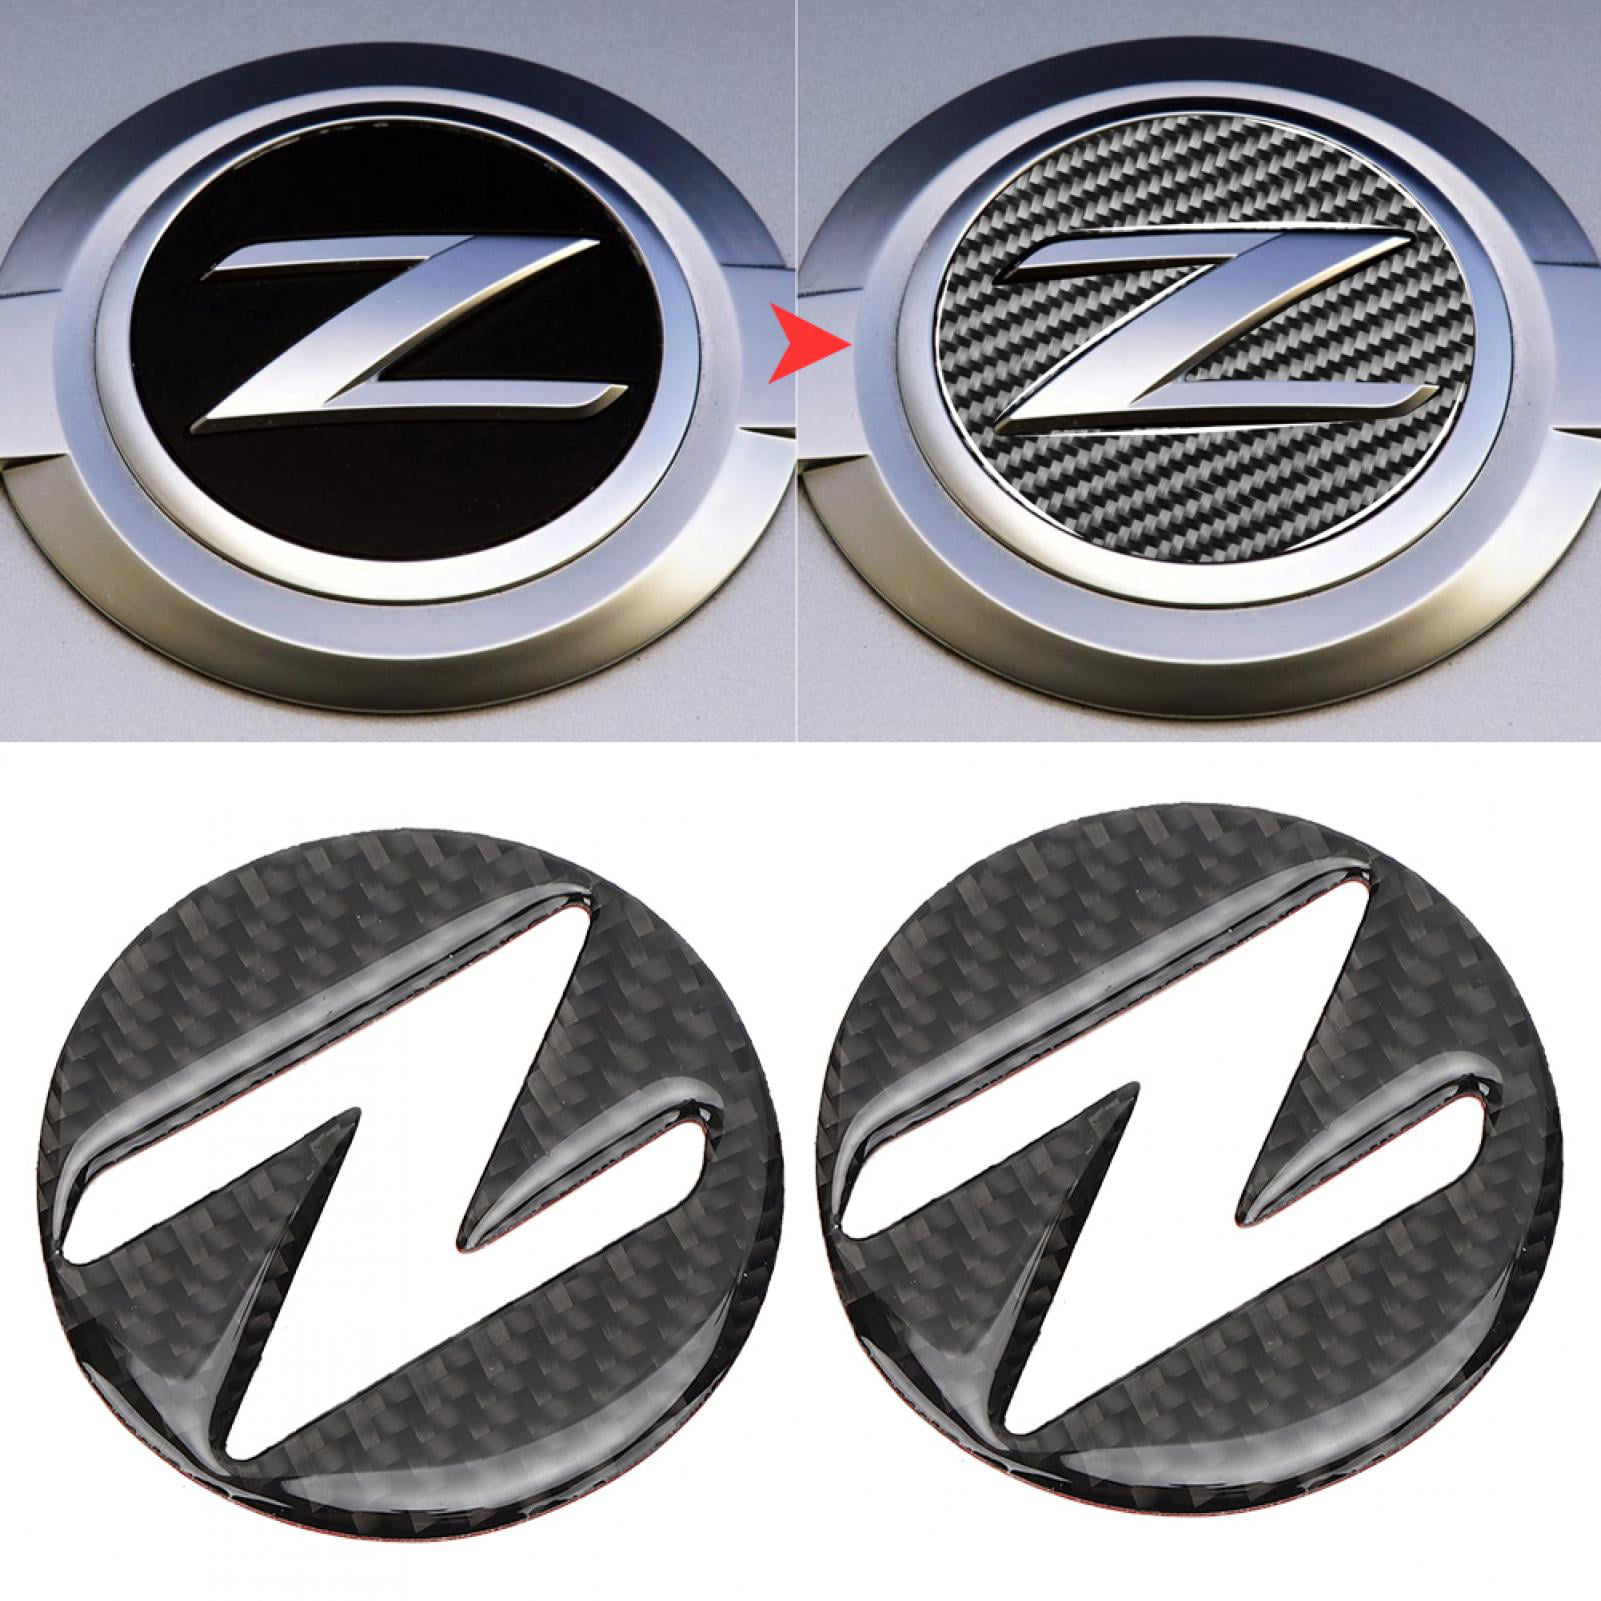 New Car Side Front Hood Fender Z Logo Emblem Badge for Nissan 350Z 370Z Z33